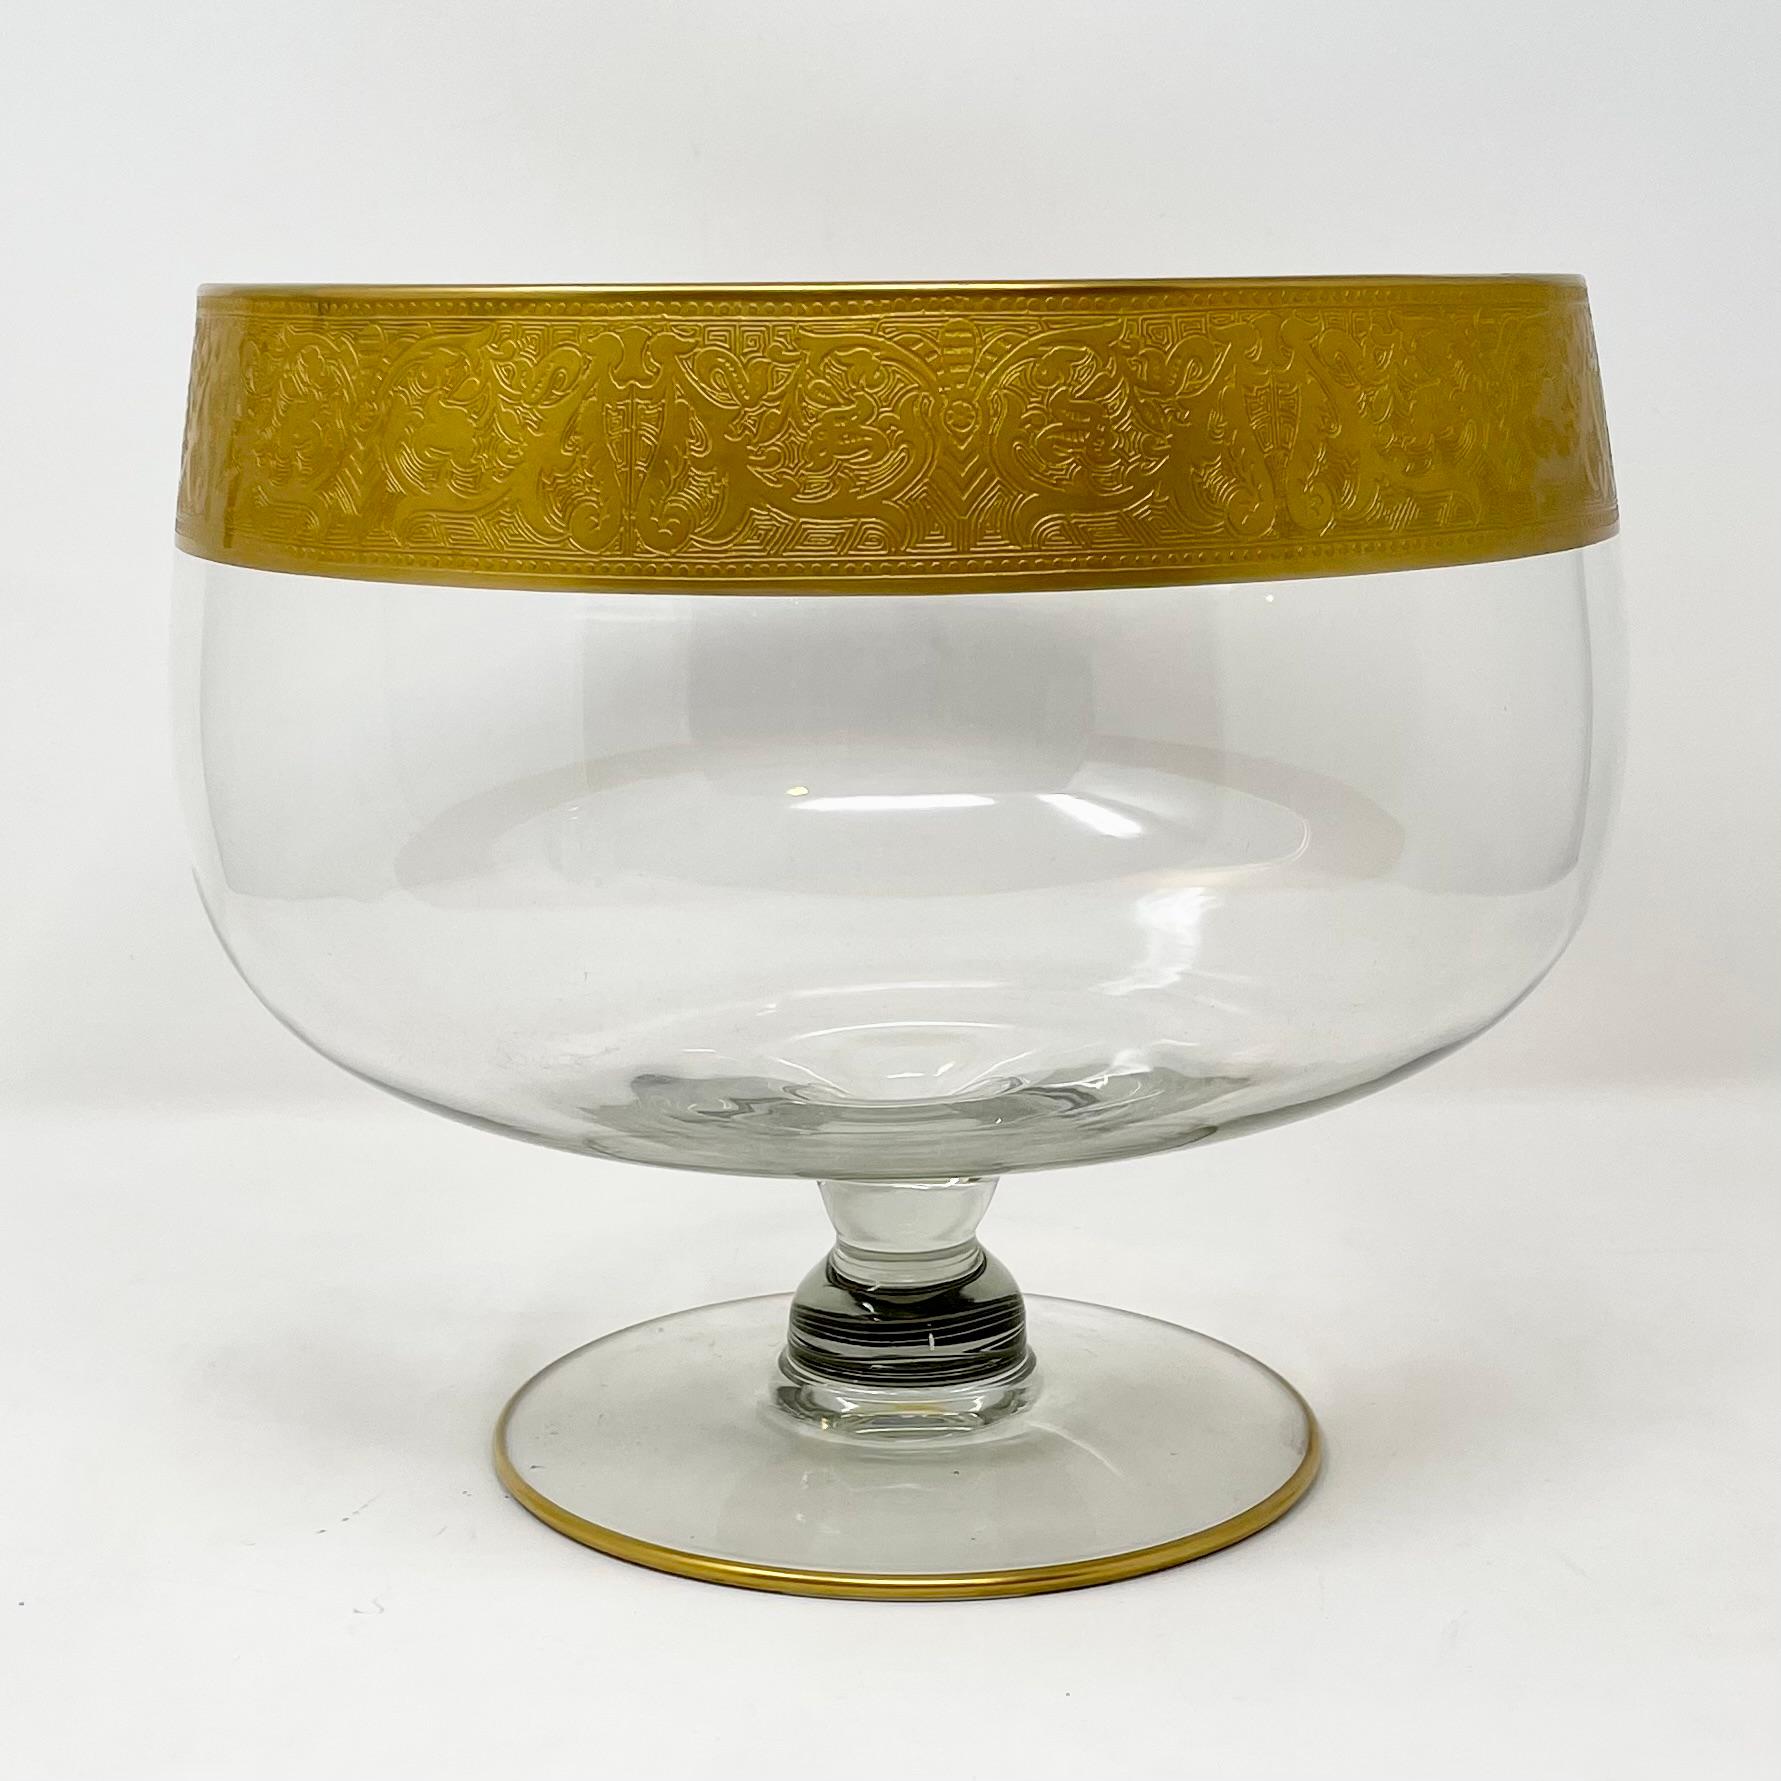 Estate lotus design 22 karat gold leaf etched crystal punch bowl with ladle & 12 glasses, circa 1940-1950.
Measures: 1 Punch Bowl: 8 1/2